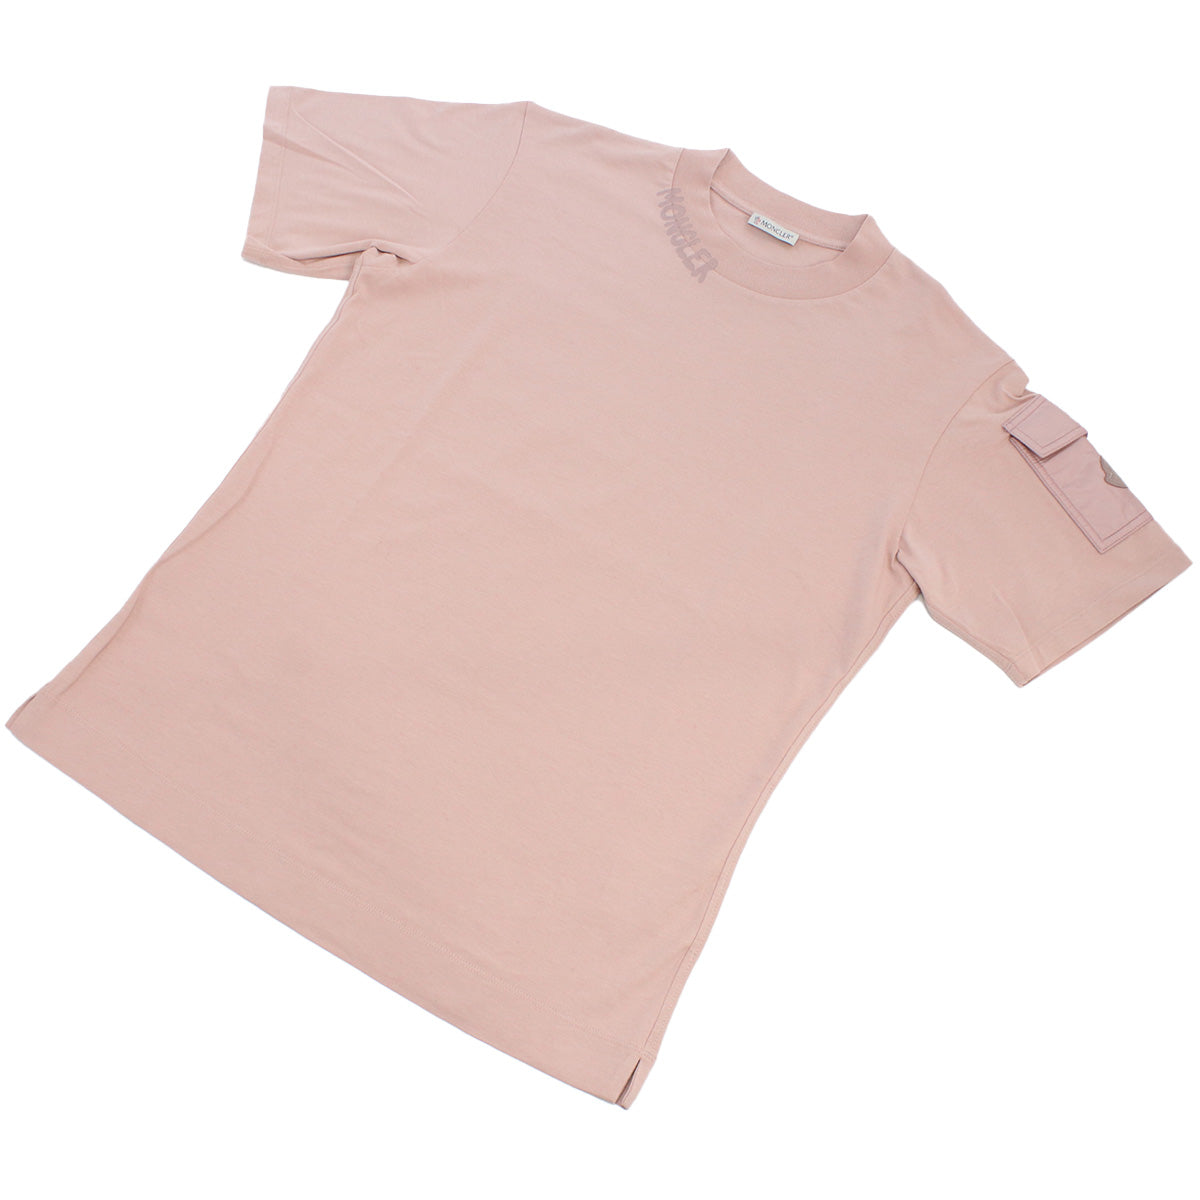 MONCLER モンクレール 8C00003 Tシャツ ピンク系 レディース